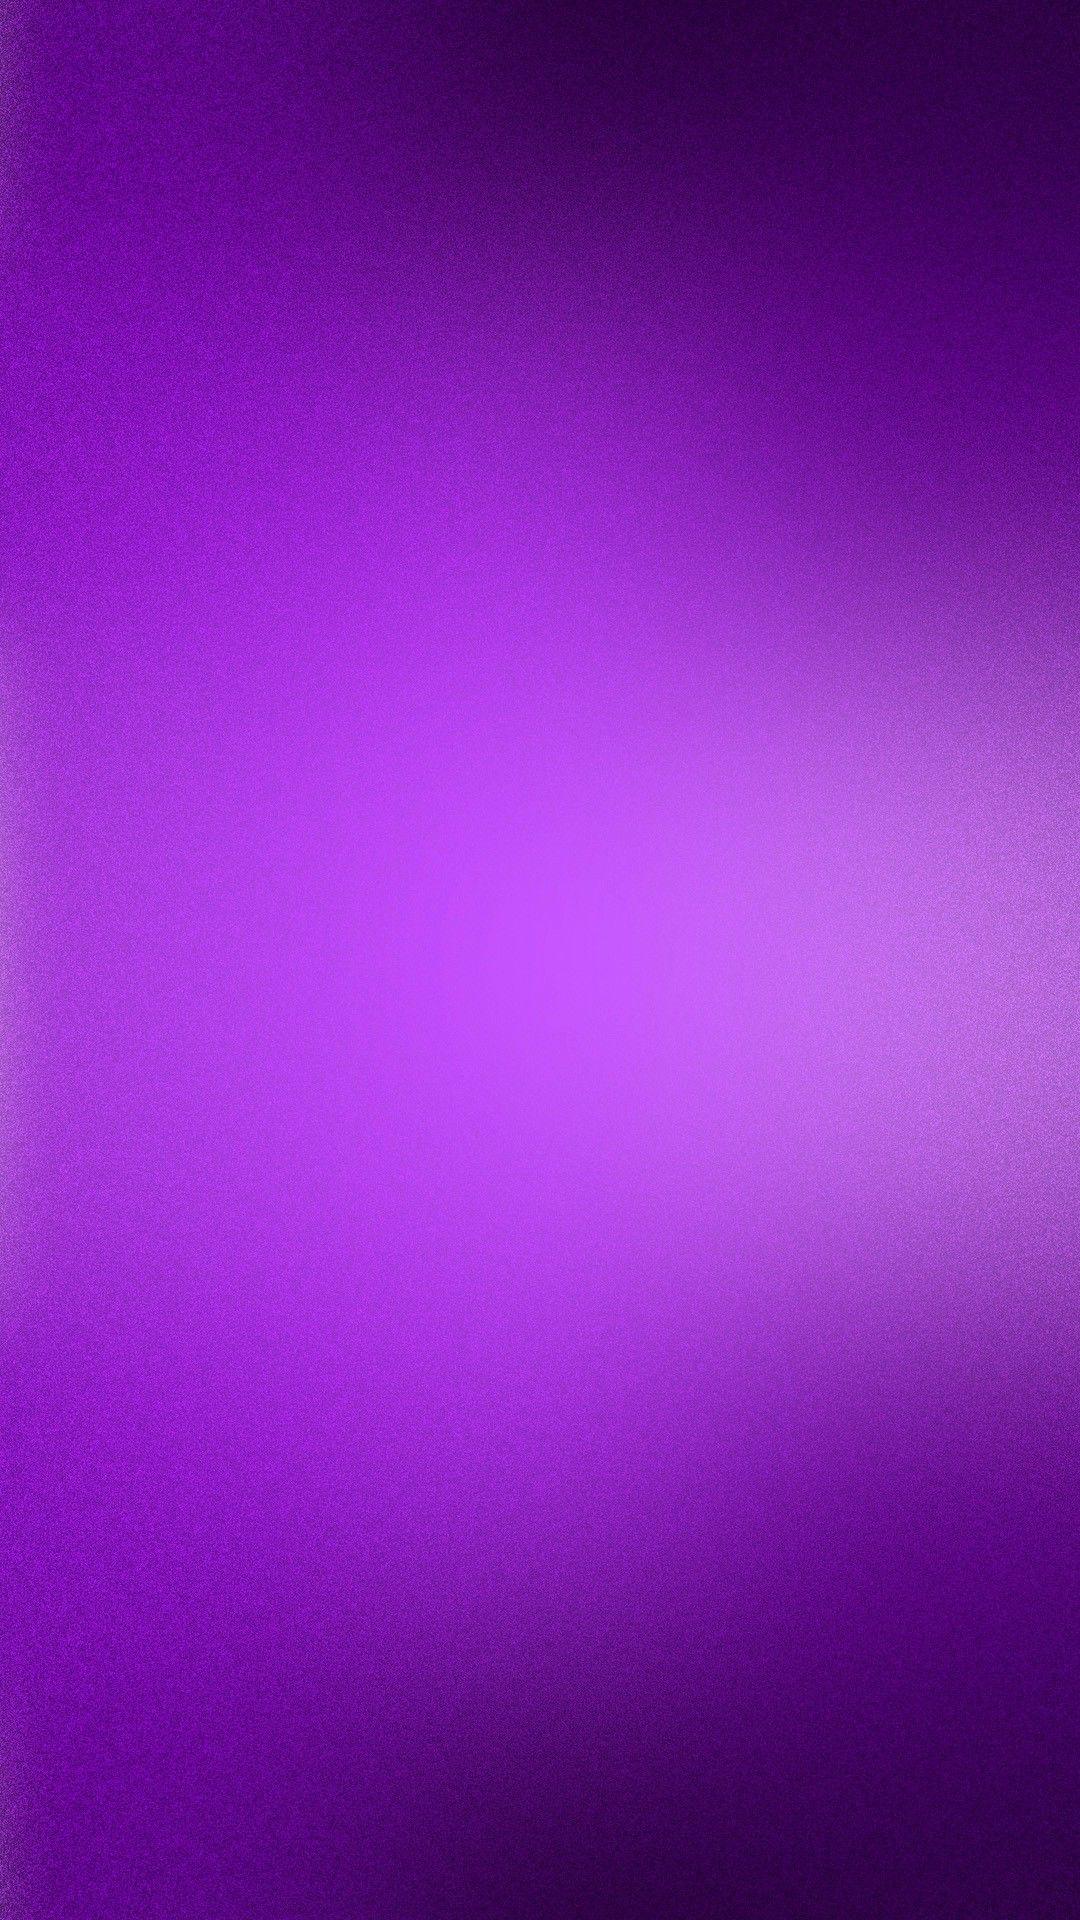 hd purple wallpaper